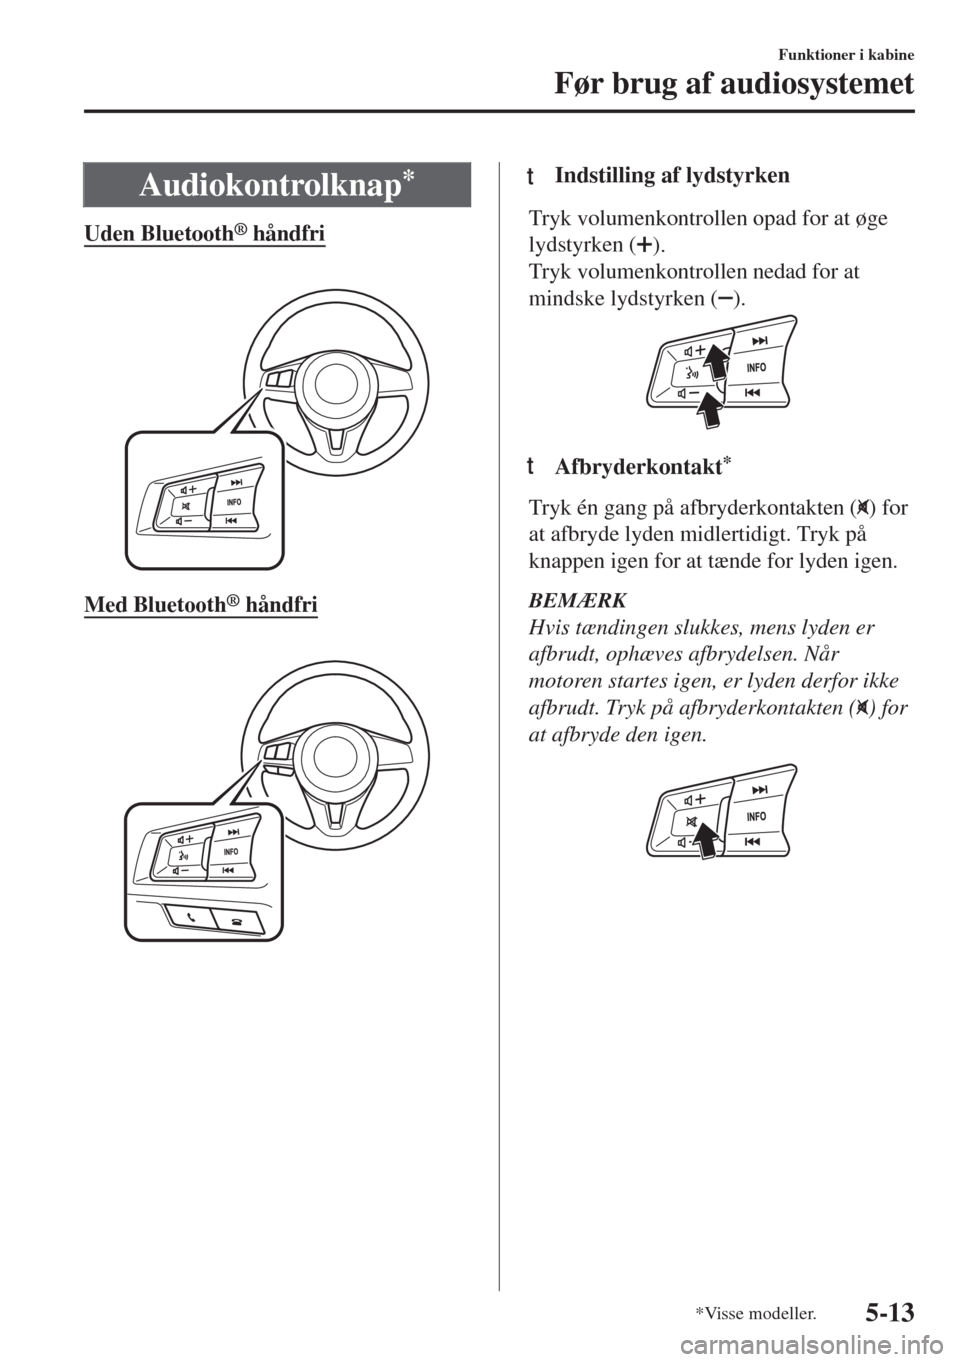 MAZDA MODEL MX-5 2018  Instruktionsbog (in Danish) Audiokontrolknap*
Uden Bluetooth® håndfri
 
Med Bluetooth® håndfri
 
ttIndstilling af lydstyrken
Tryk volumenkontrollen opad for at øge
lydstyrken (
).
Tryk volumenkontrollen nedad for at
mindske